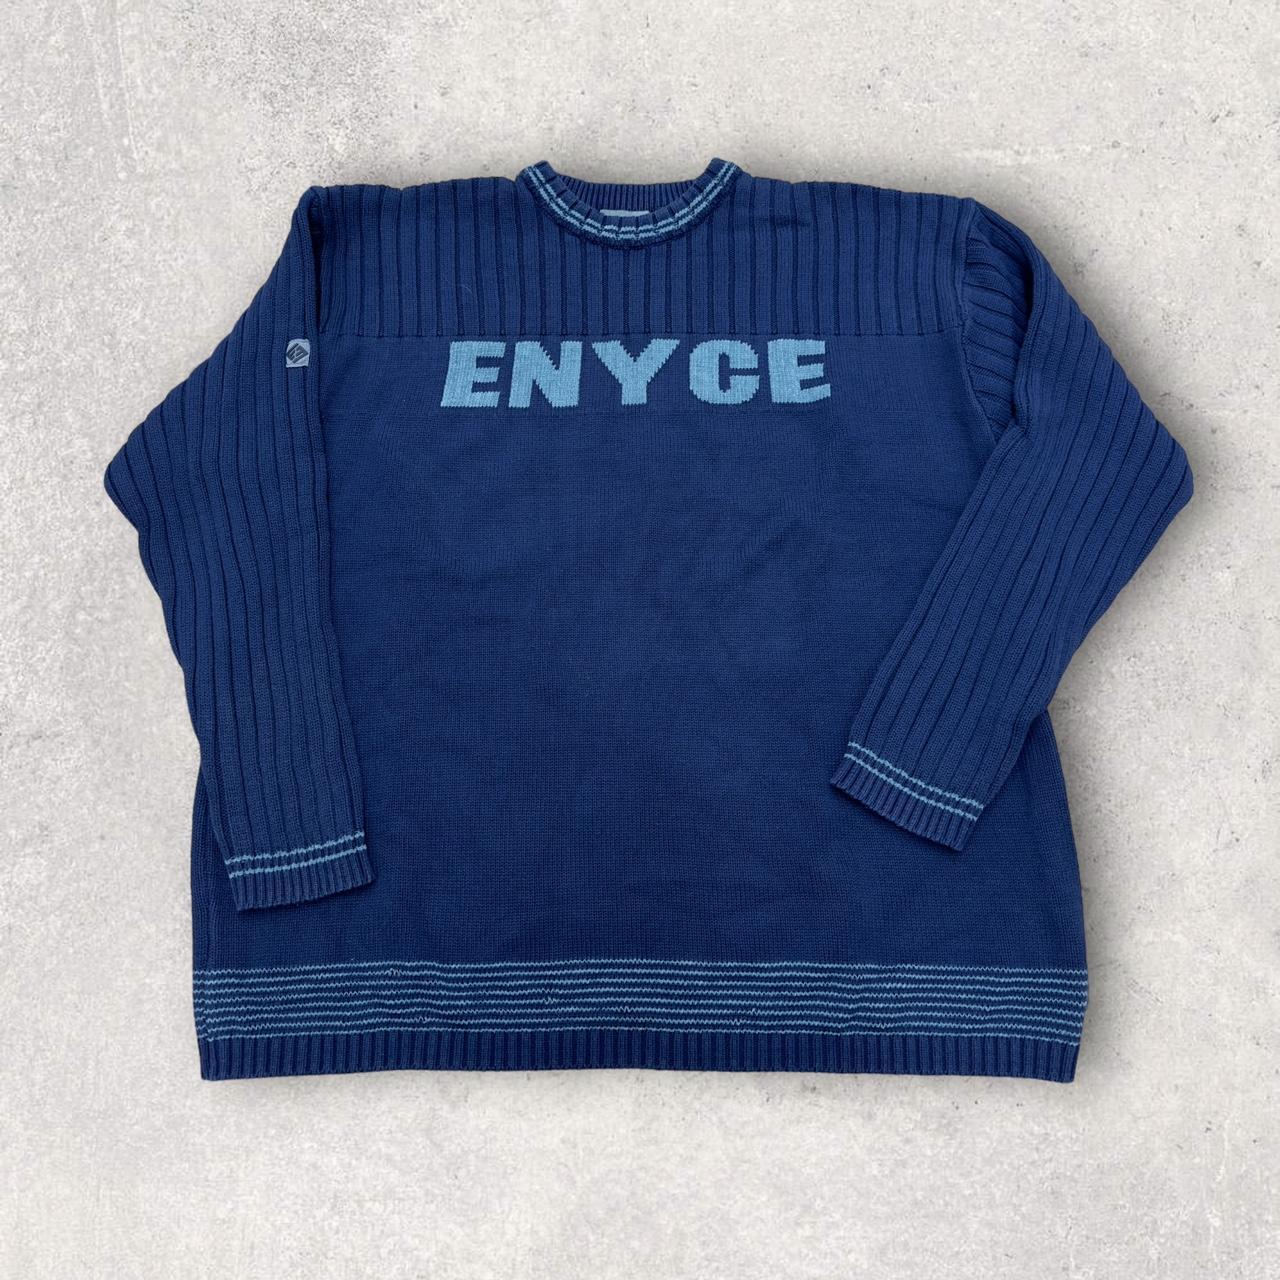 Vintage Enyce sweater in navy. Y2K early 2000s. Mens... - Depop